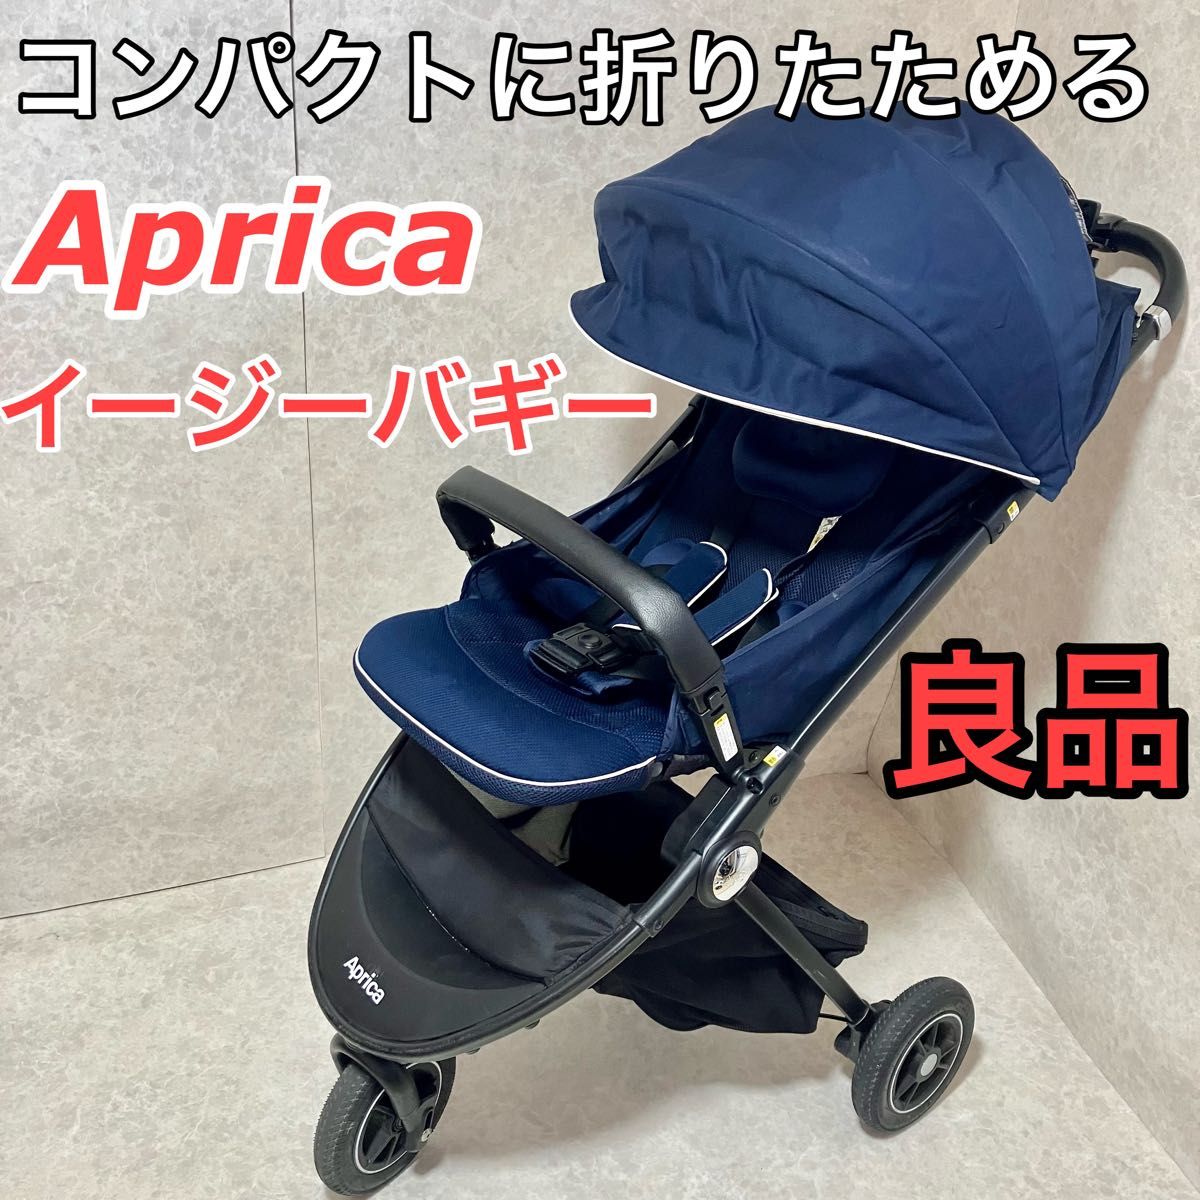 Aprica(アップリカ) A型ベビーカー イージー・バギー 1か月~36か月まで 3輪タイプ (ネイビー) 2079005